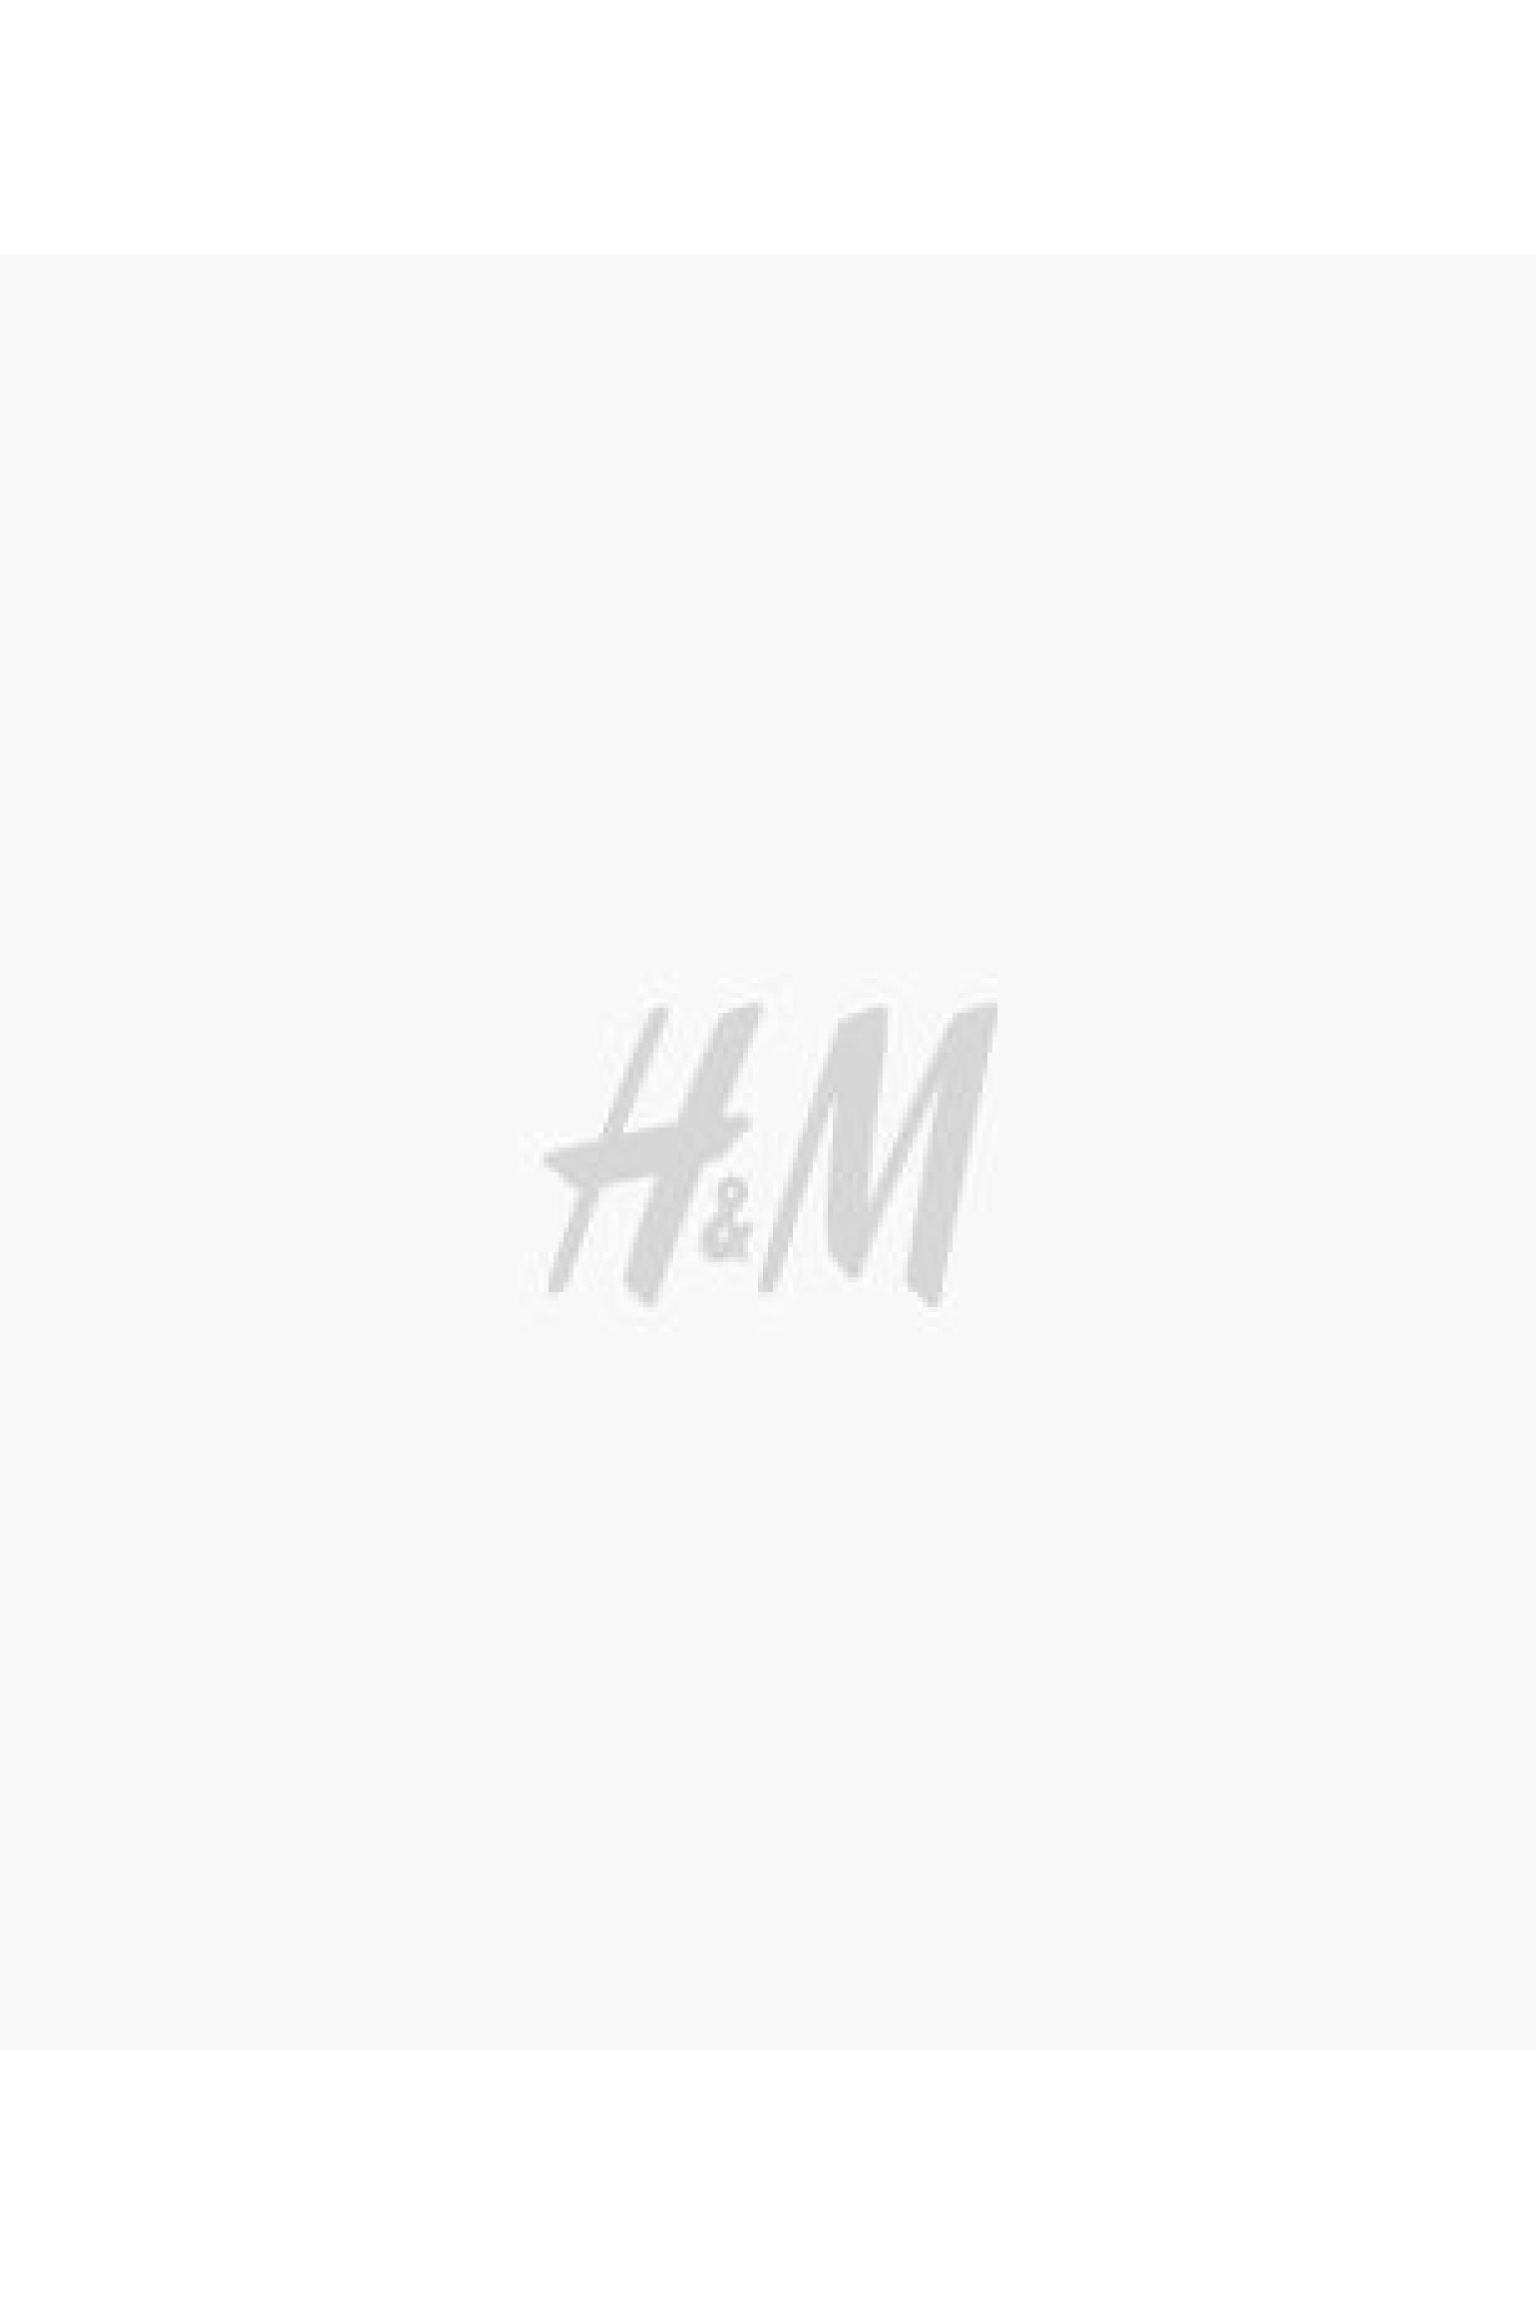 에이치앤엠 H&M 2-piece Cotton Jersey Sibling Set